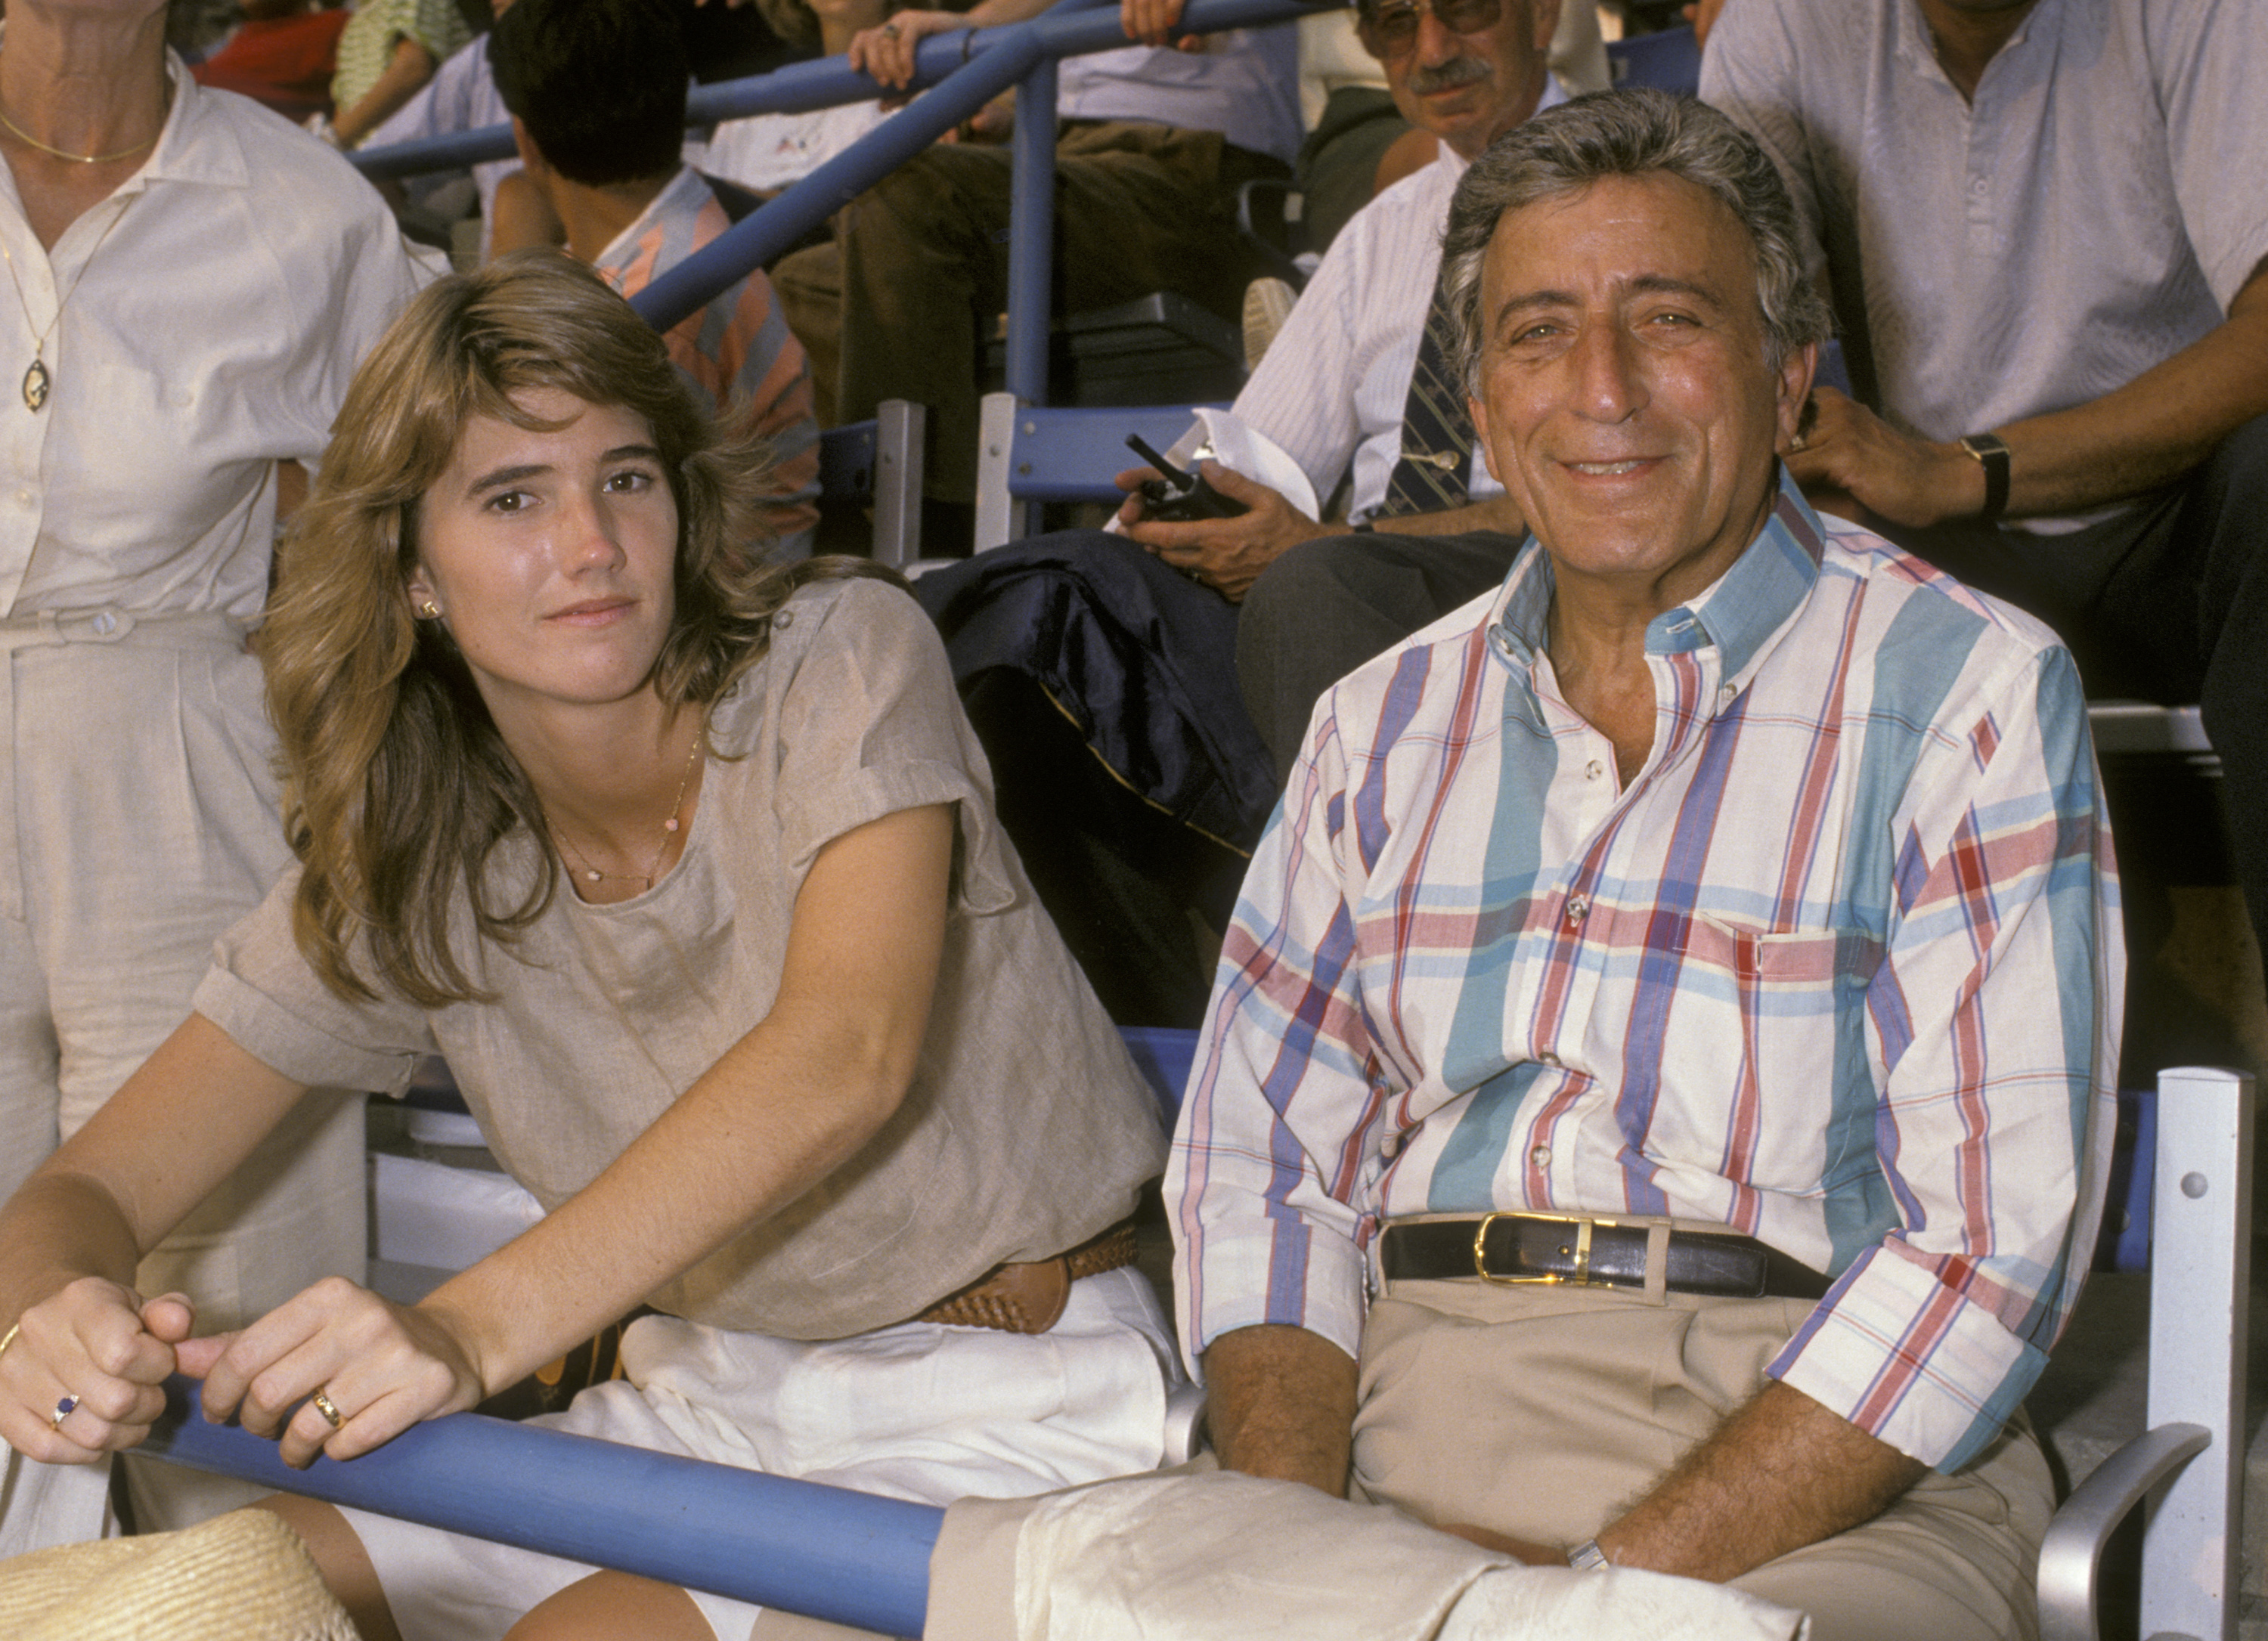 Susan Crow et Tony Bennett lors de l'US Open 1989 au Flushing Meadow Park le 10 septembre 1989 dans le Queens, New York | Source : Getty Images